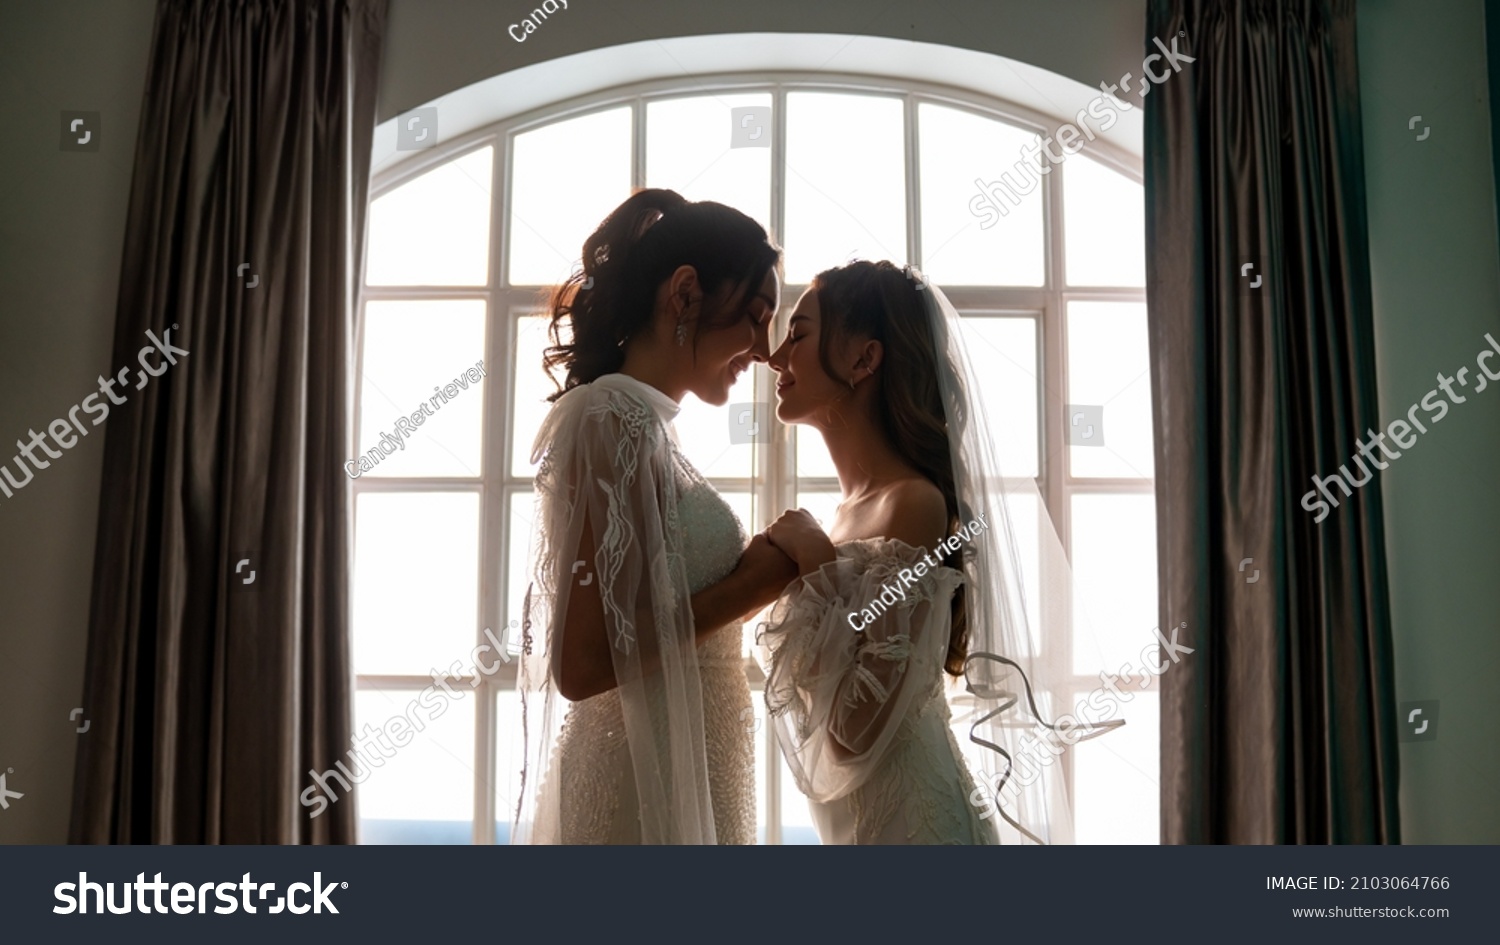 ウェディングドレスに手をつないで抱き合う美しいアジアの女性レズビアンのカップルのポートレート多様な性の平等lgbtqの誇り結婚の平等